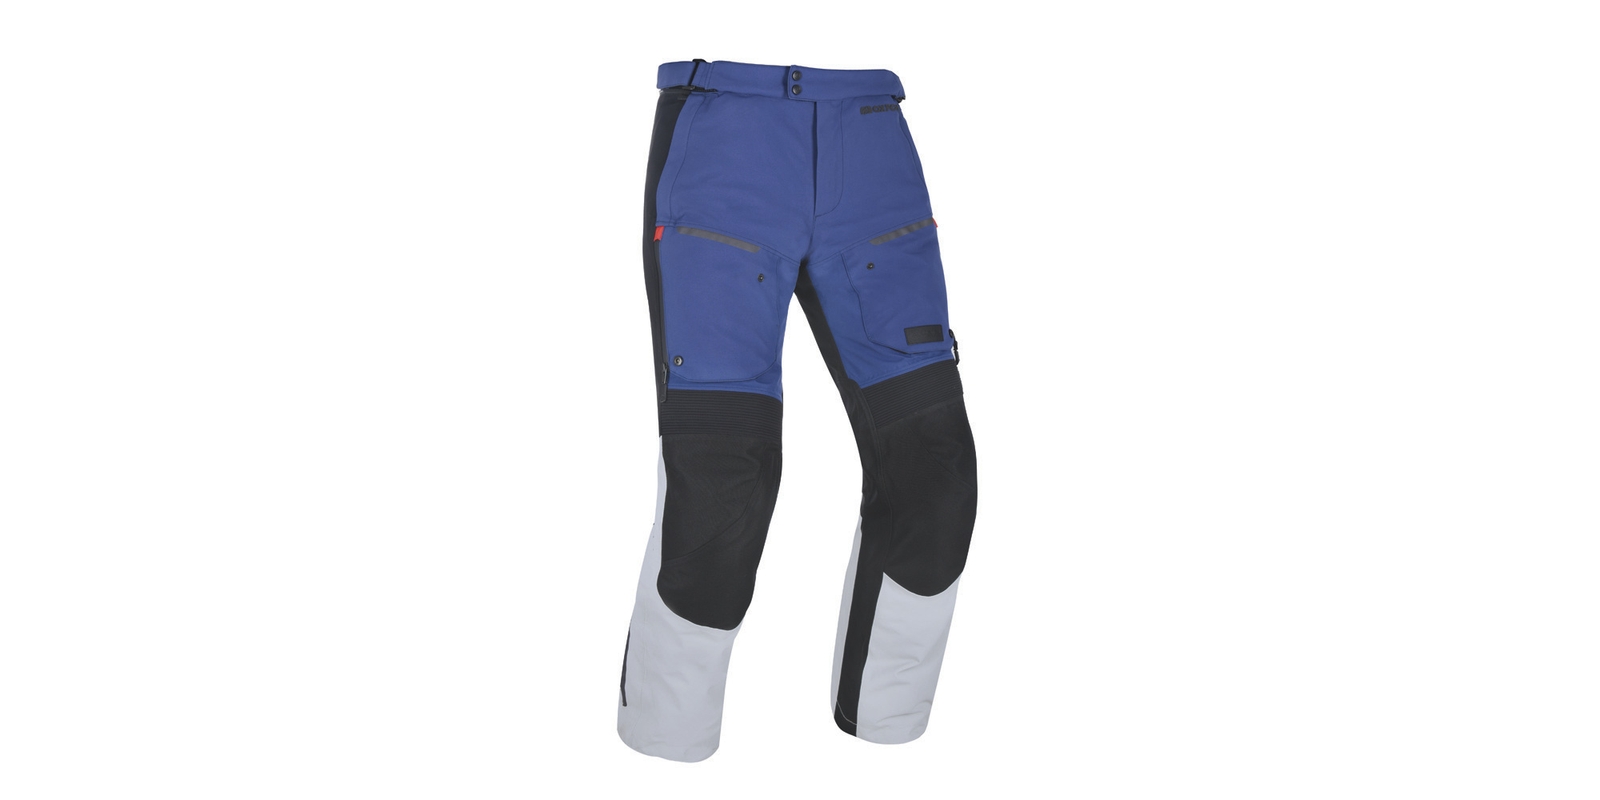 Obrázek produktu kalhoty MONDIAL, OXFORD ADVANCED (šedé/modré/černé)